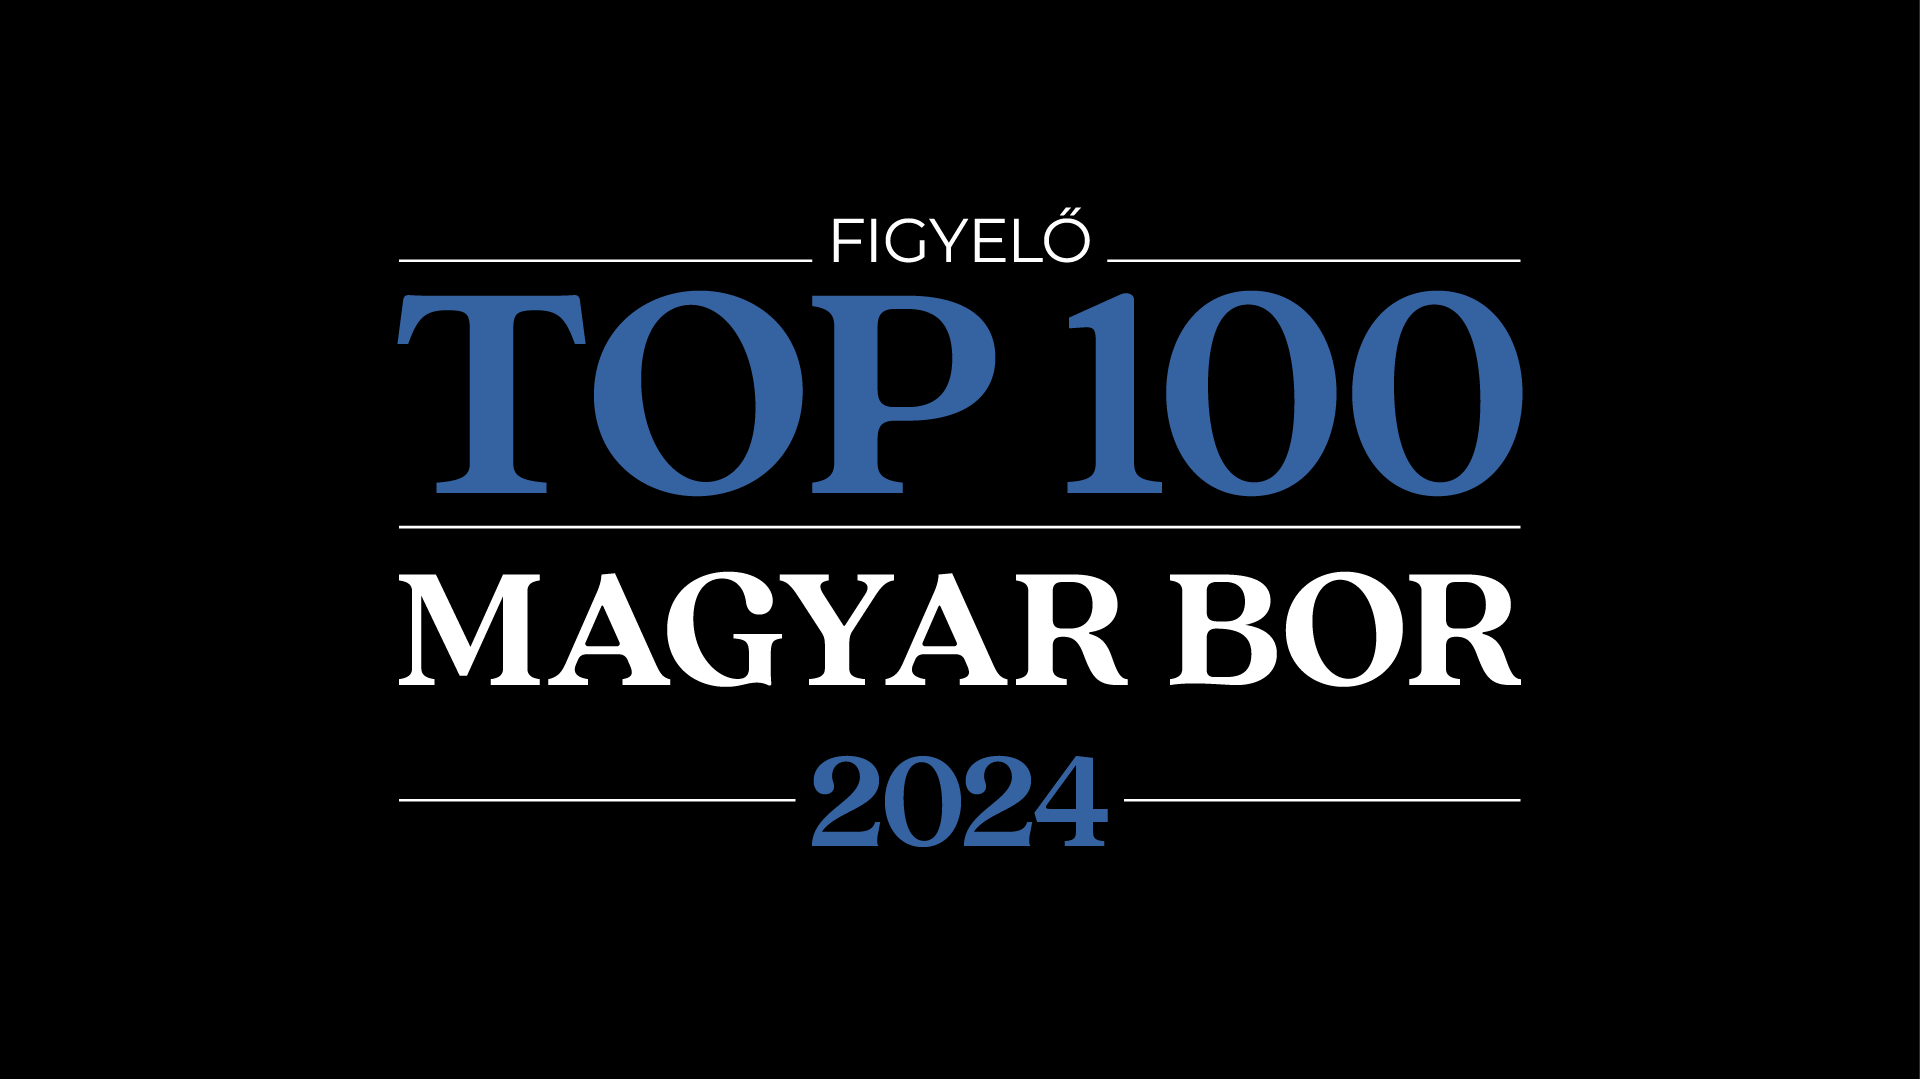 Figyelő TOP 100 magyar bor